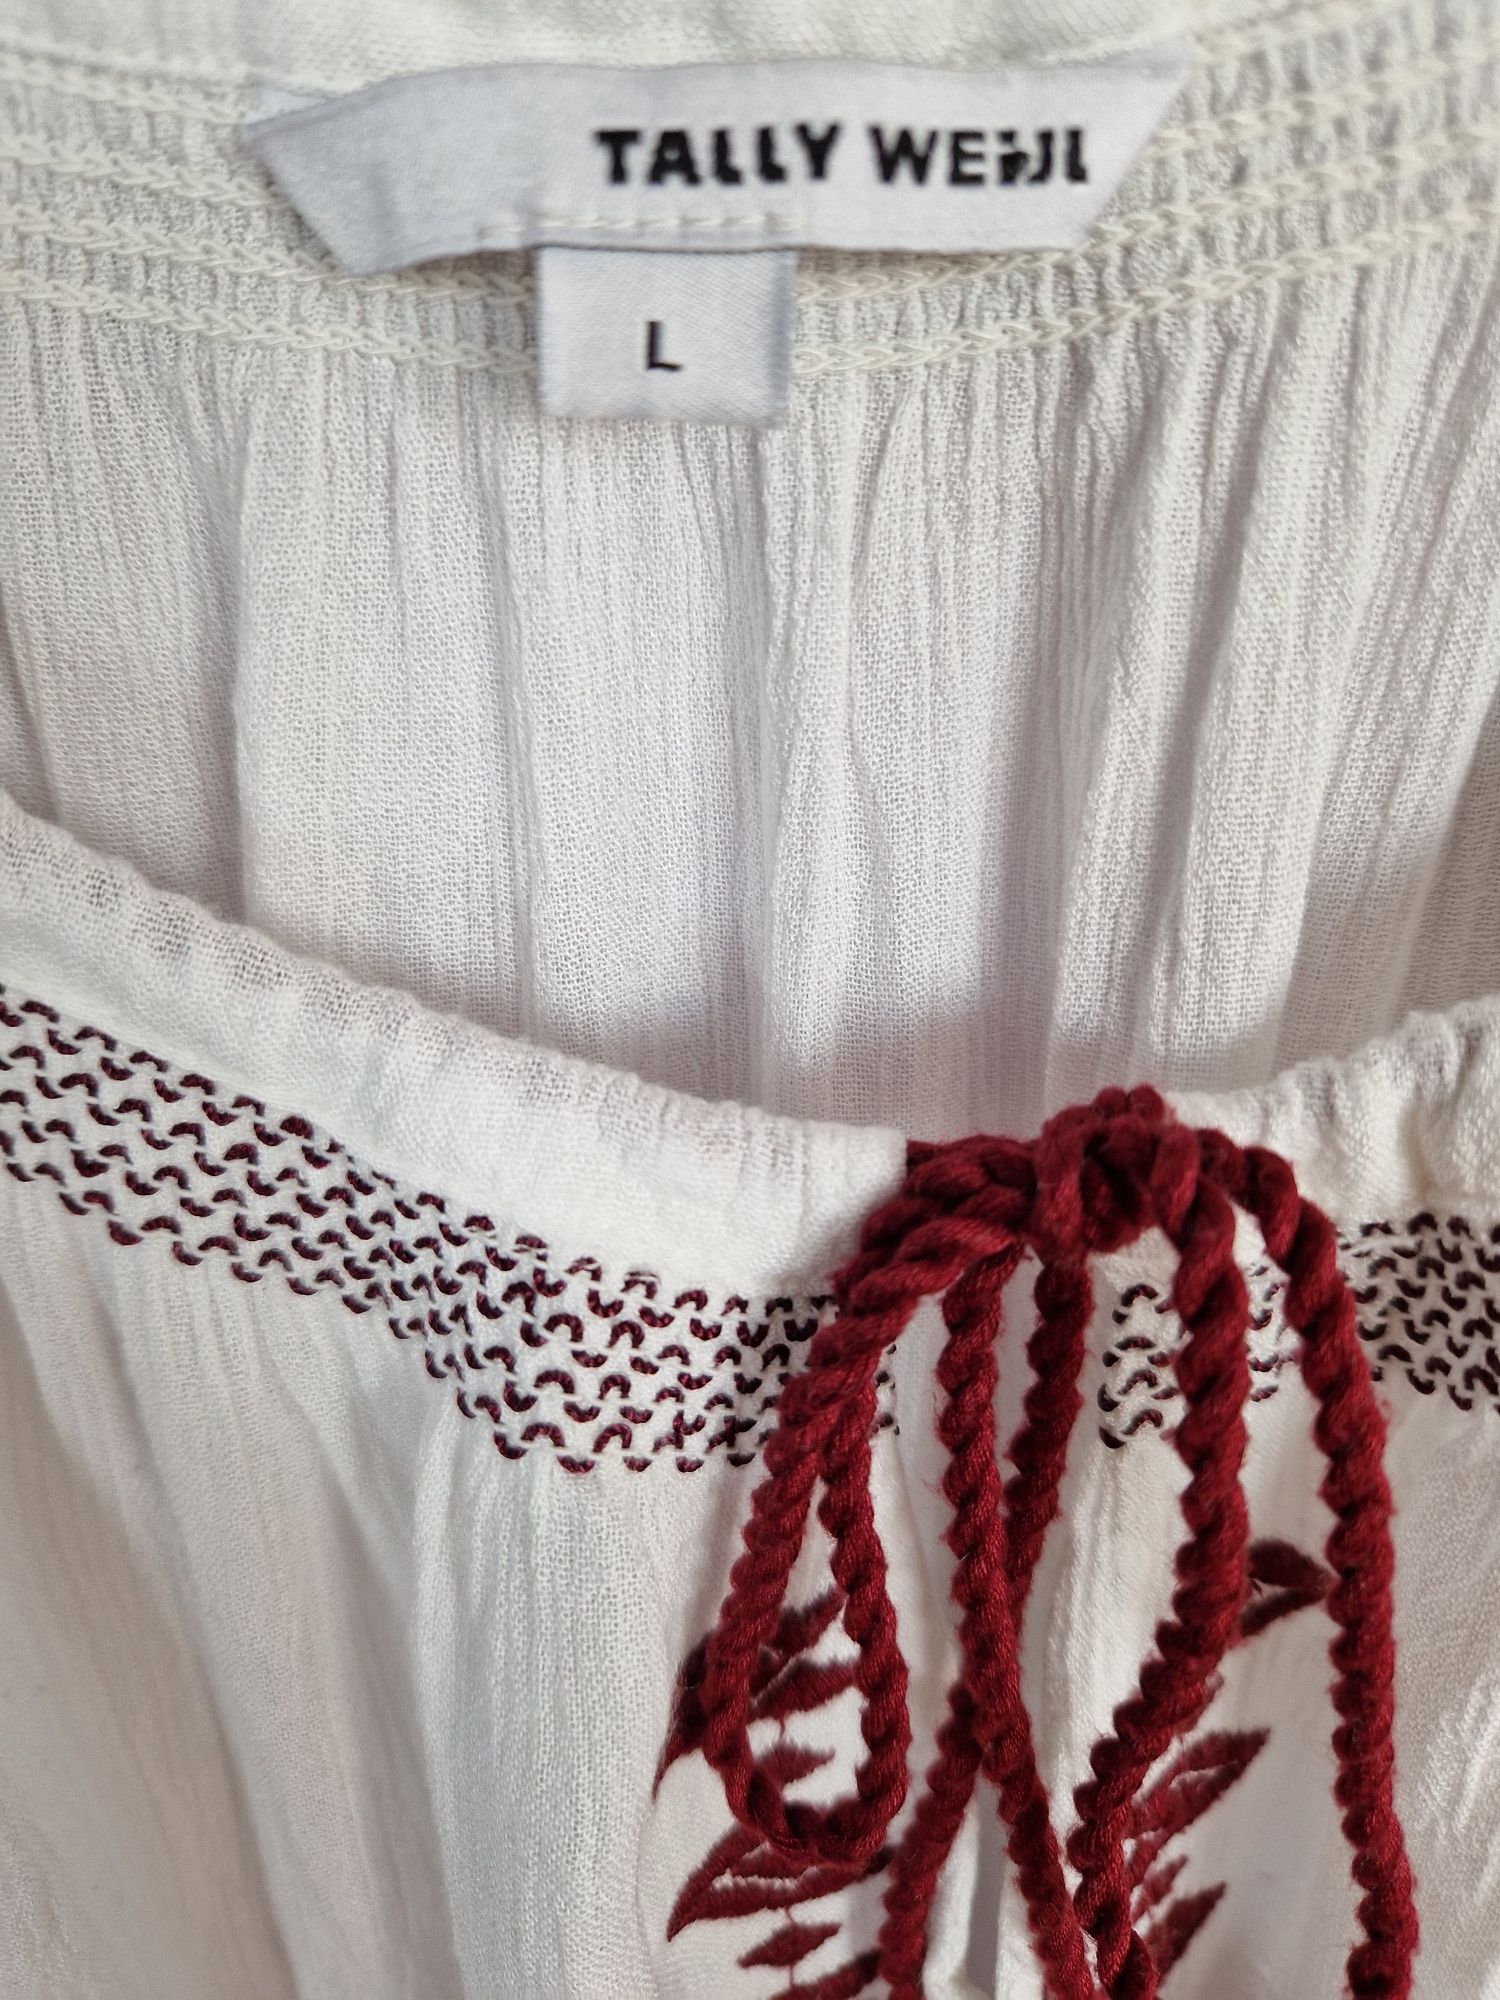 Biała sukienka/ tunika z wiskozy, Tally Weijl, rozmiar L